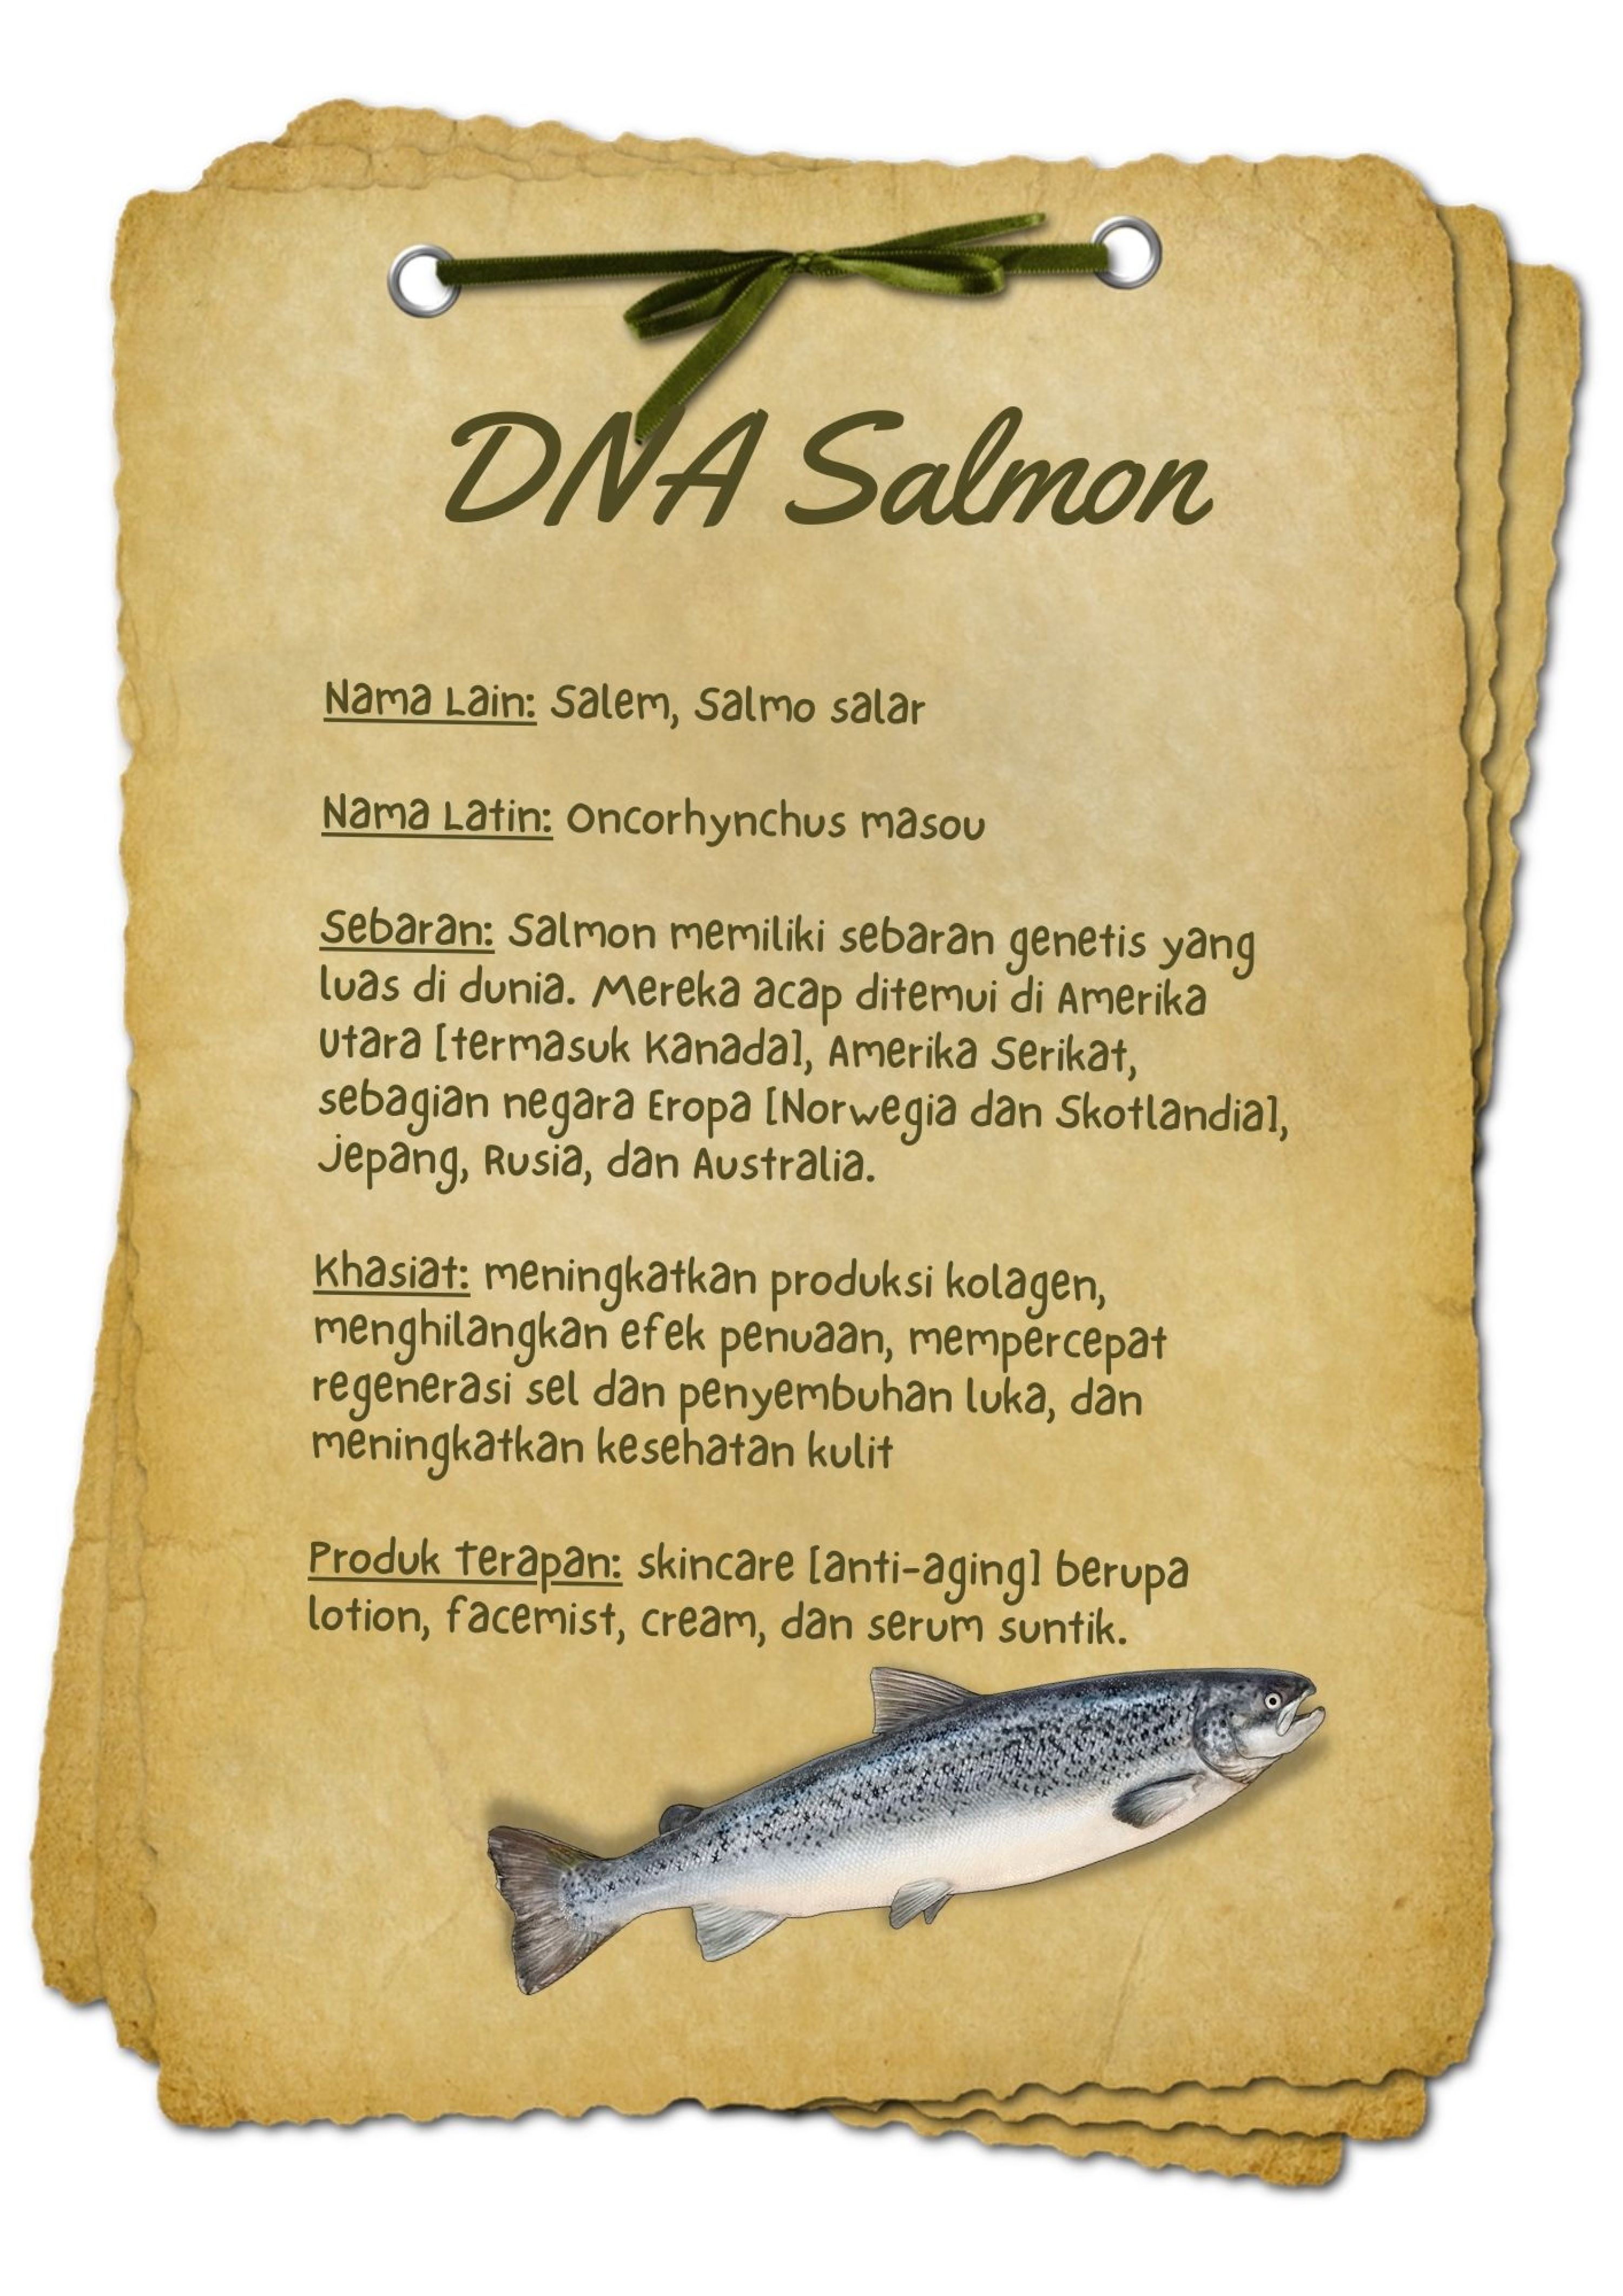 BAHAN AKTIF  DNA Salmon - Beautyversity.jpg